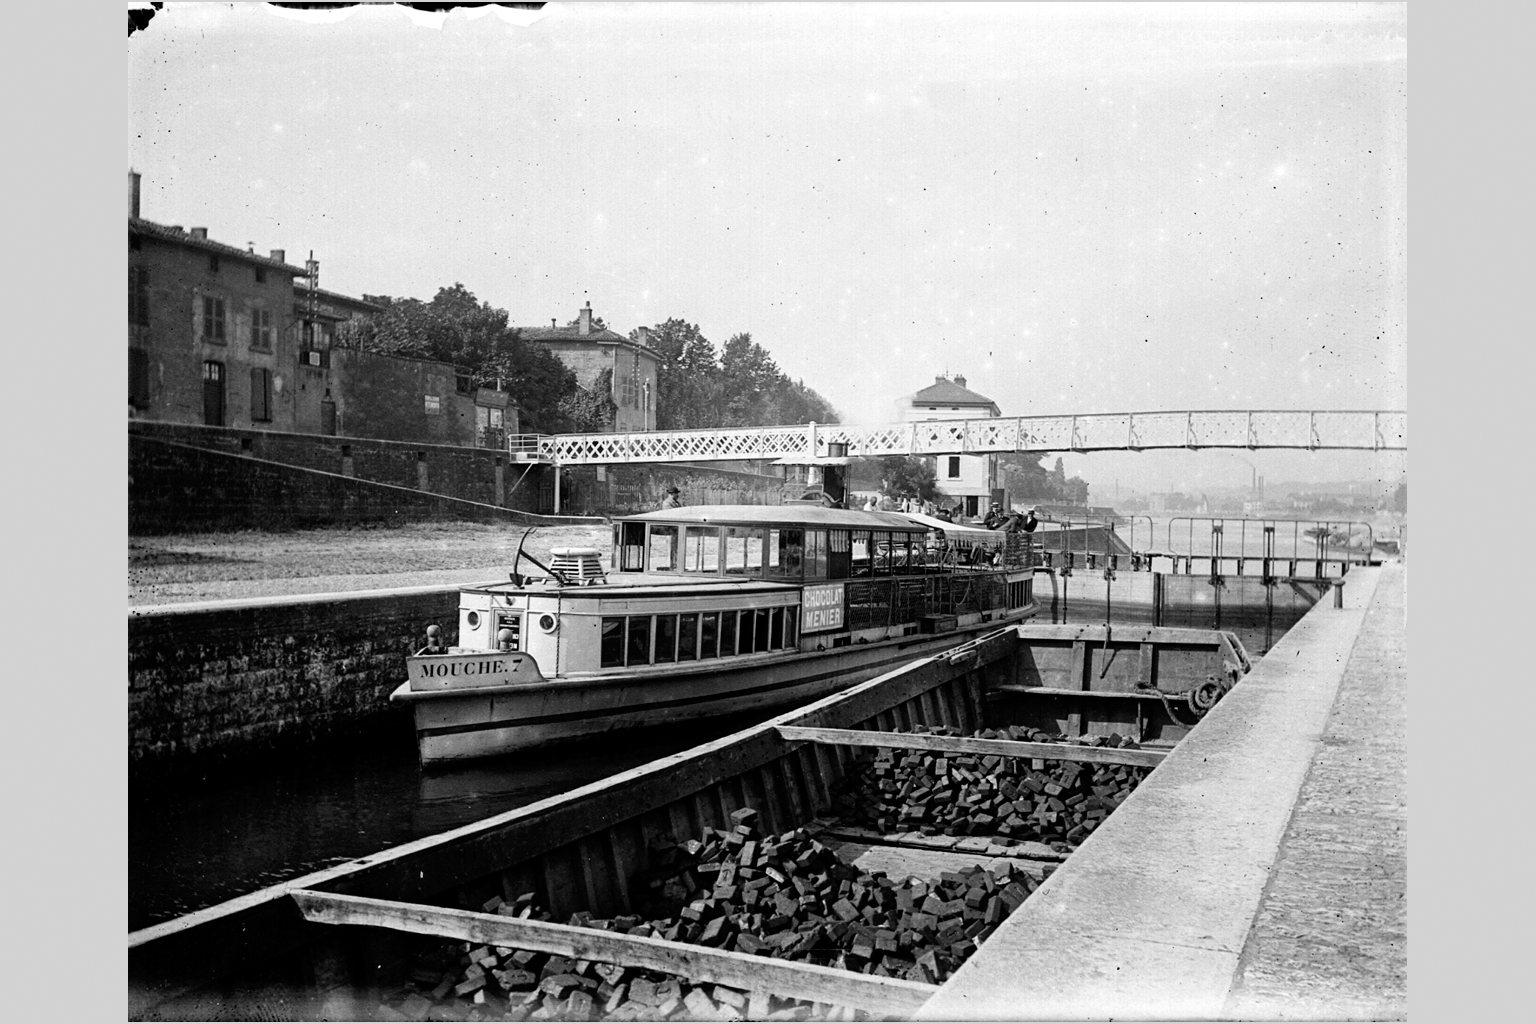 Écluse sur la Saône, à l'Ile-Barbe près de Lyon, bateau-mouche : photo négative NB sur plaque de verre (vers 1900, cote : 10PH/196)